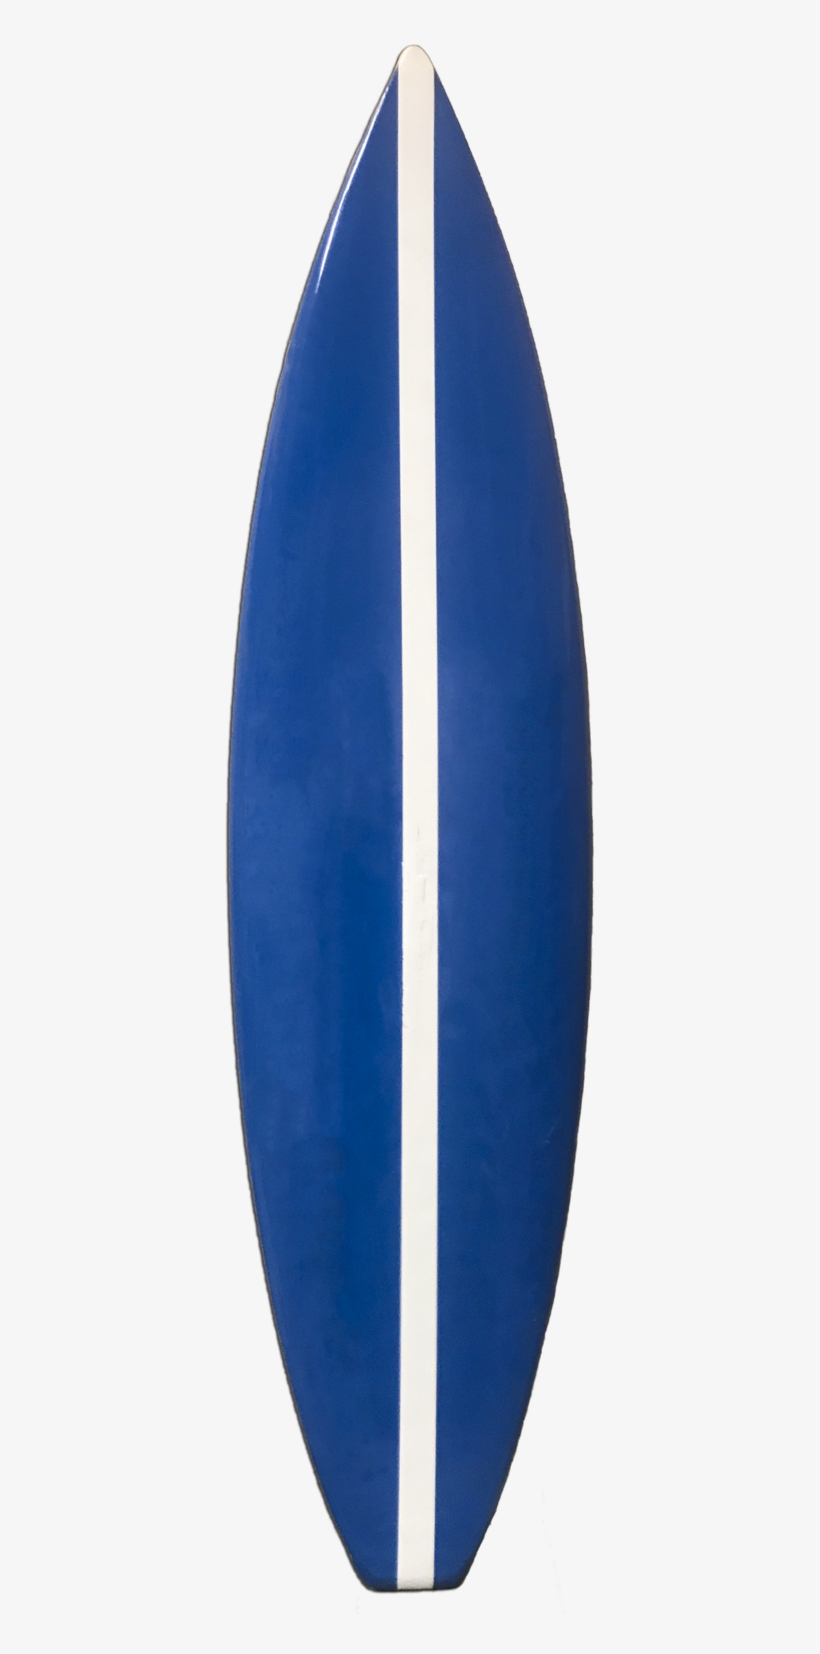 Blue Surf Board - Surfboard, transparent png #8686974